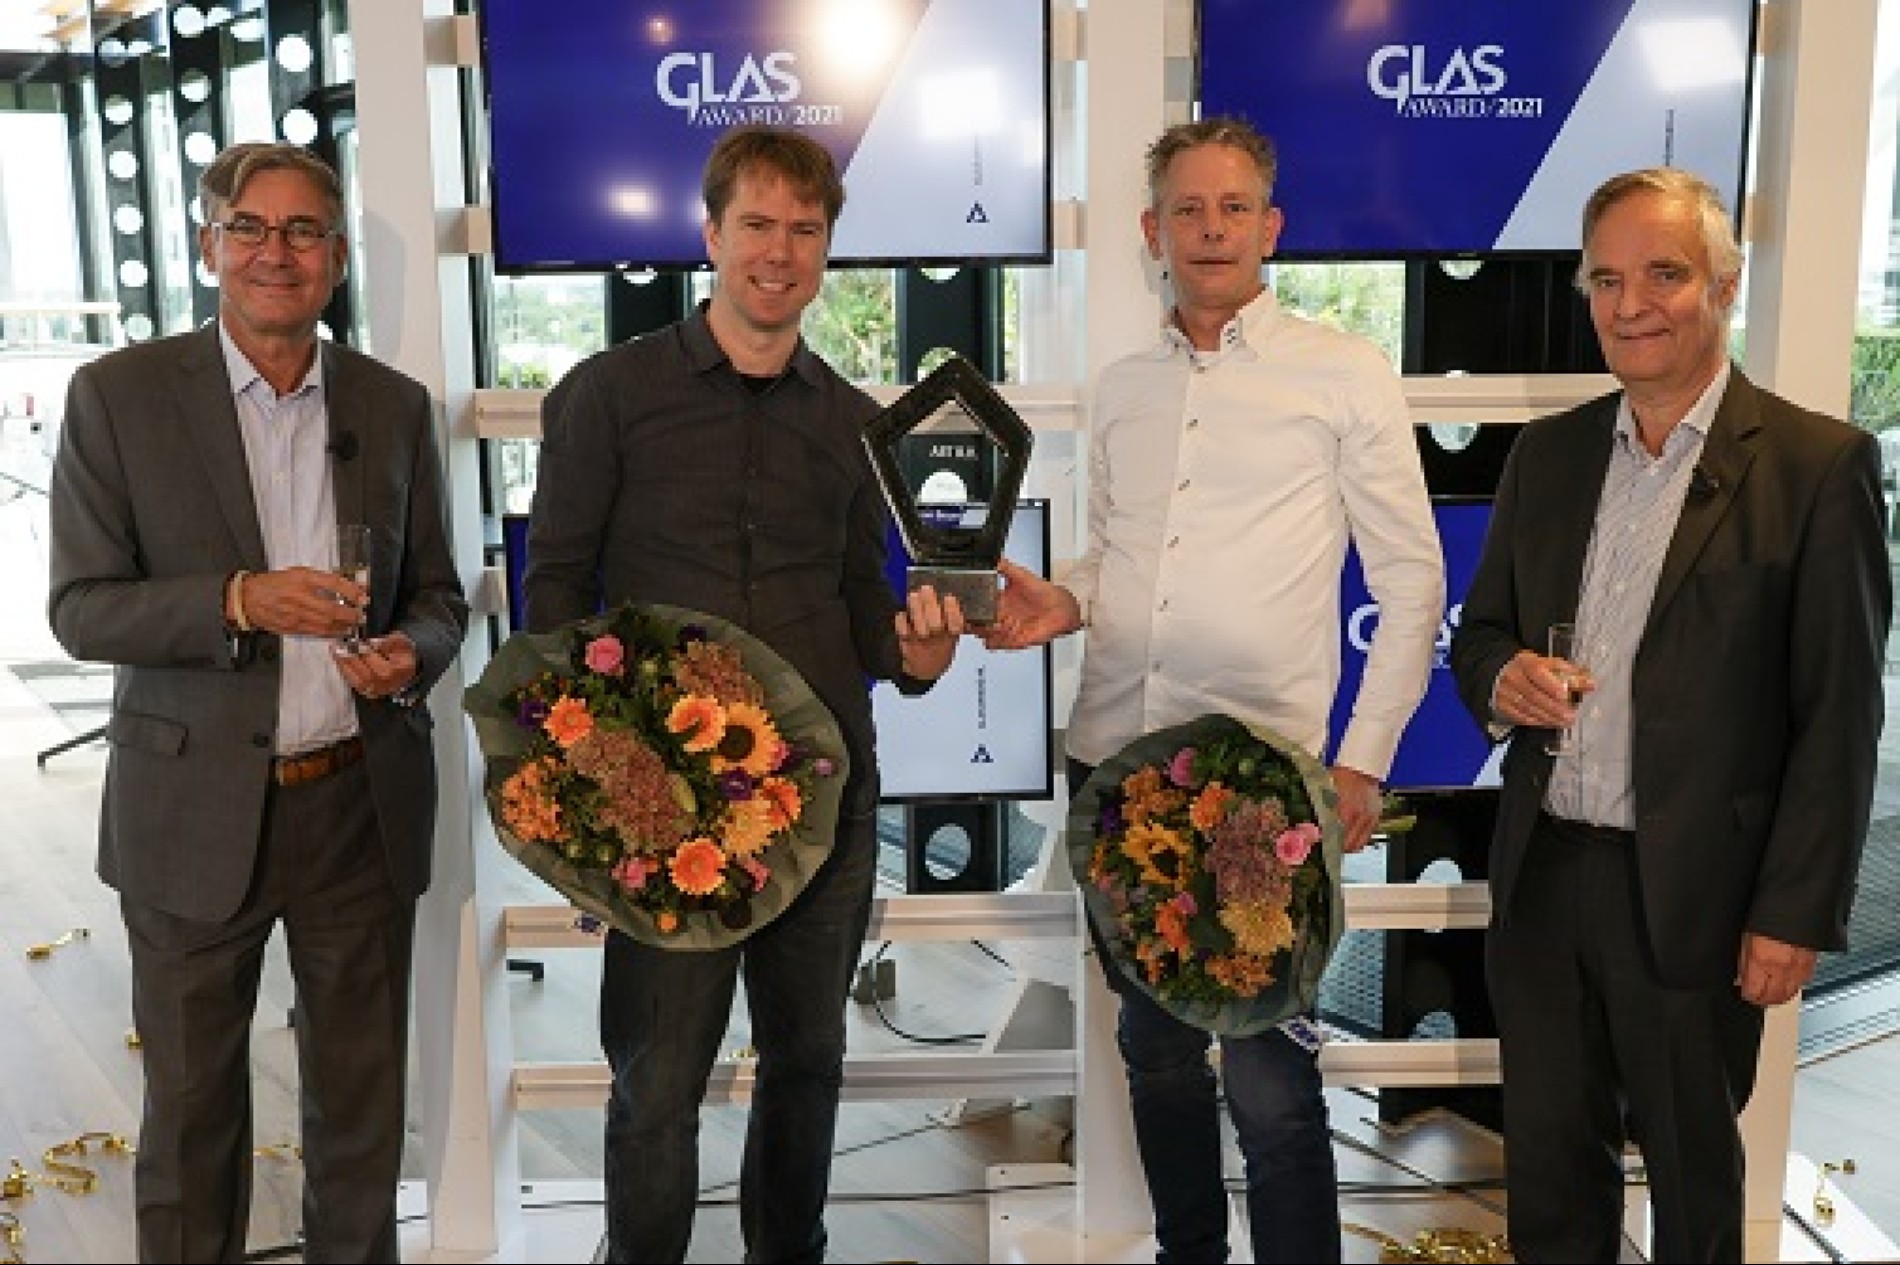 Op 16 september 2021 reikte Bouwend Nederland Vakgroep GLAS voor de 10e keer de 